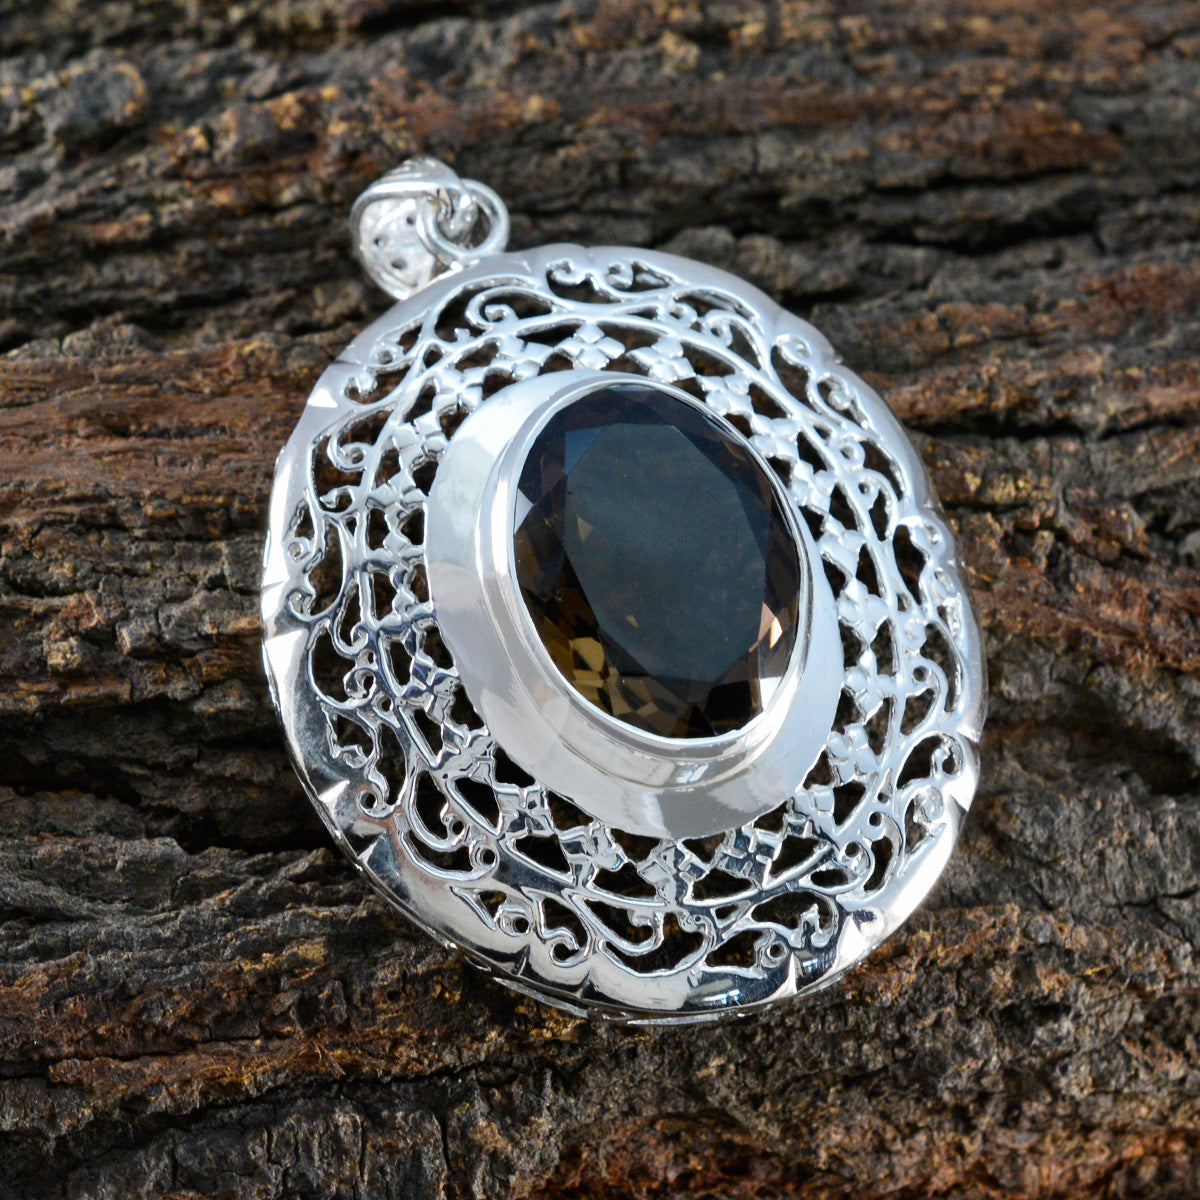 riyo attraente gemme ovali sfaccettate quarzo fumé marrone pendente in argento massiccio regalo per il Venerdì Santo